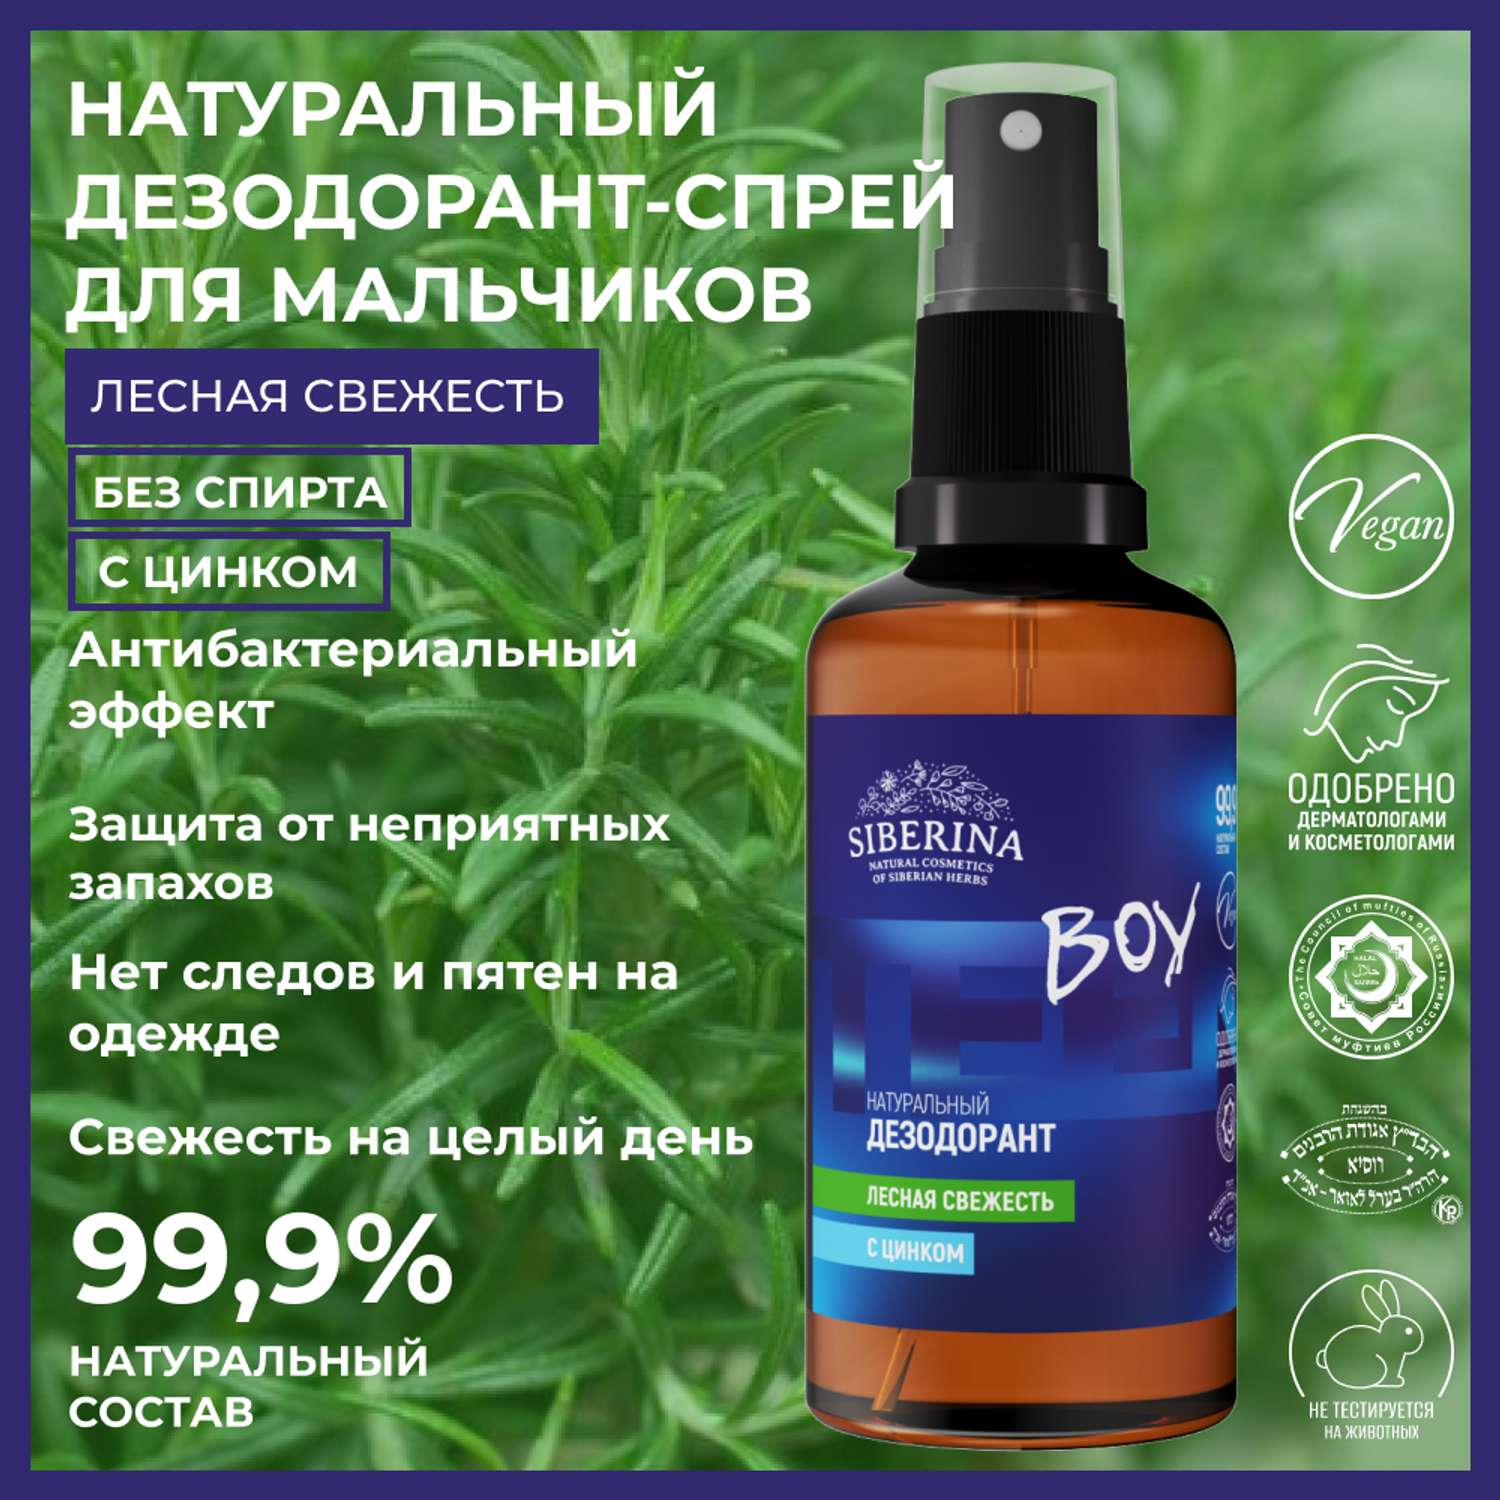 Дезодорант-спрей Siberina натуральный «Лесная свежесть» с цинком для подростков 50 мл - фото 2